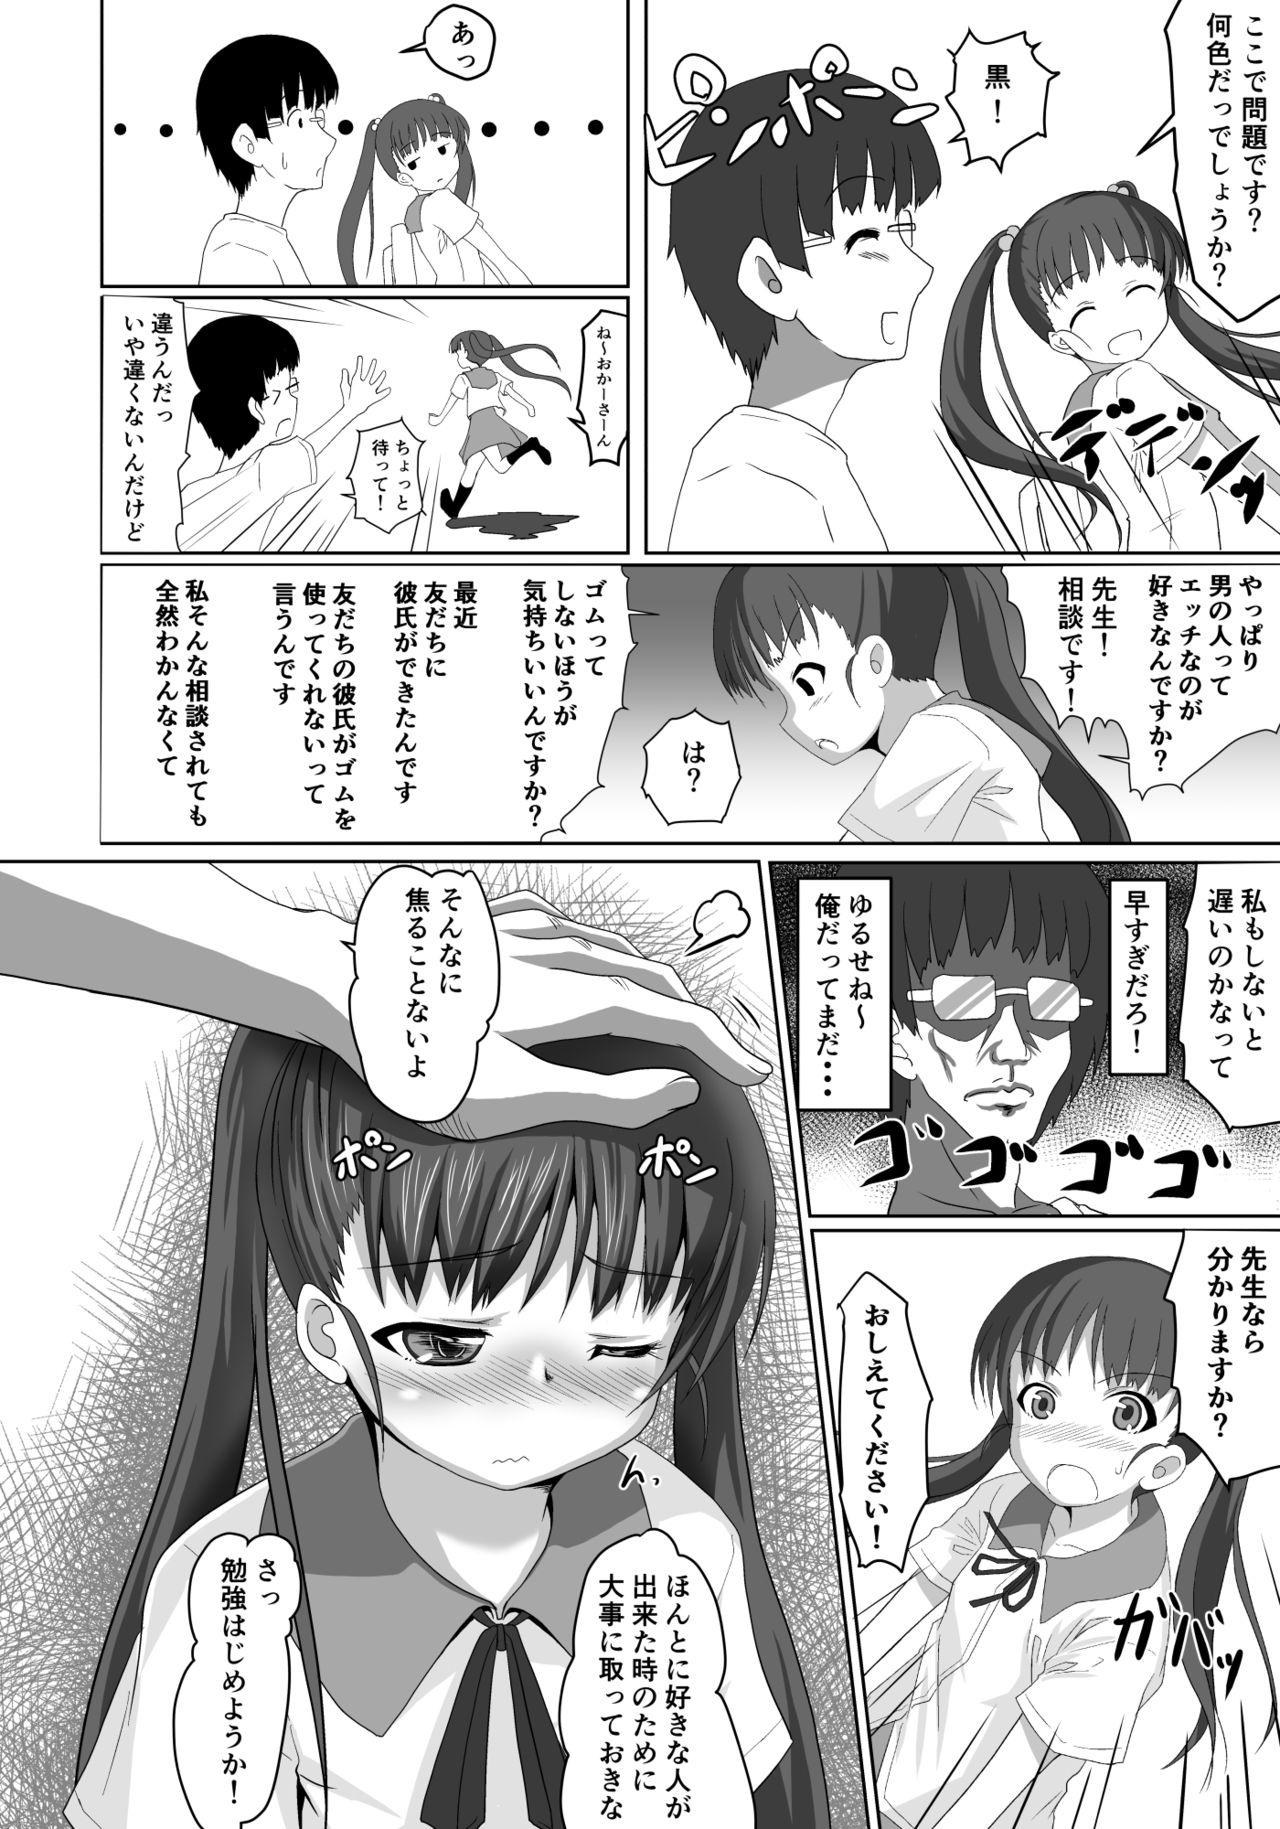 Ex Girlfriends Sensei! Tokubetsu Jisshuu Shimasho! Wet - Page 9